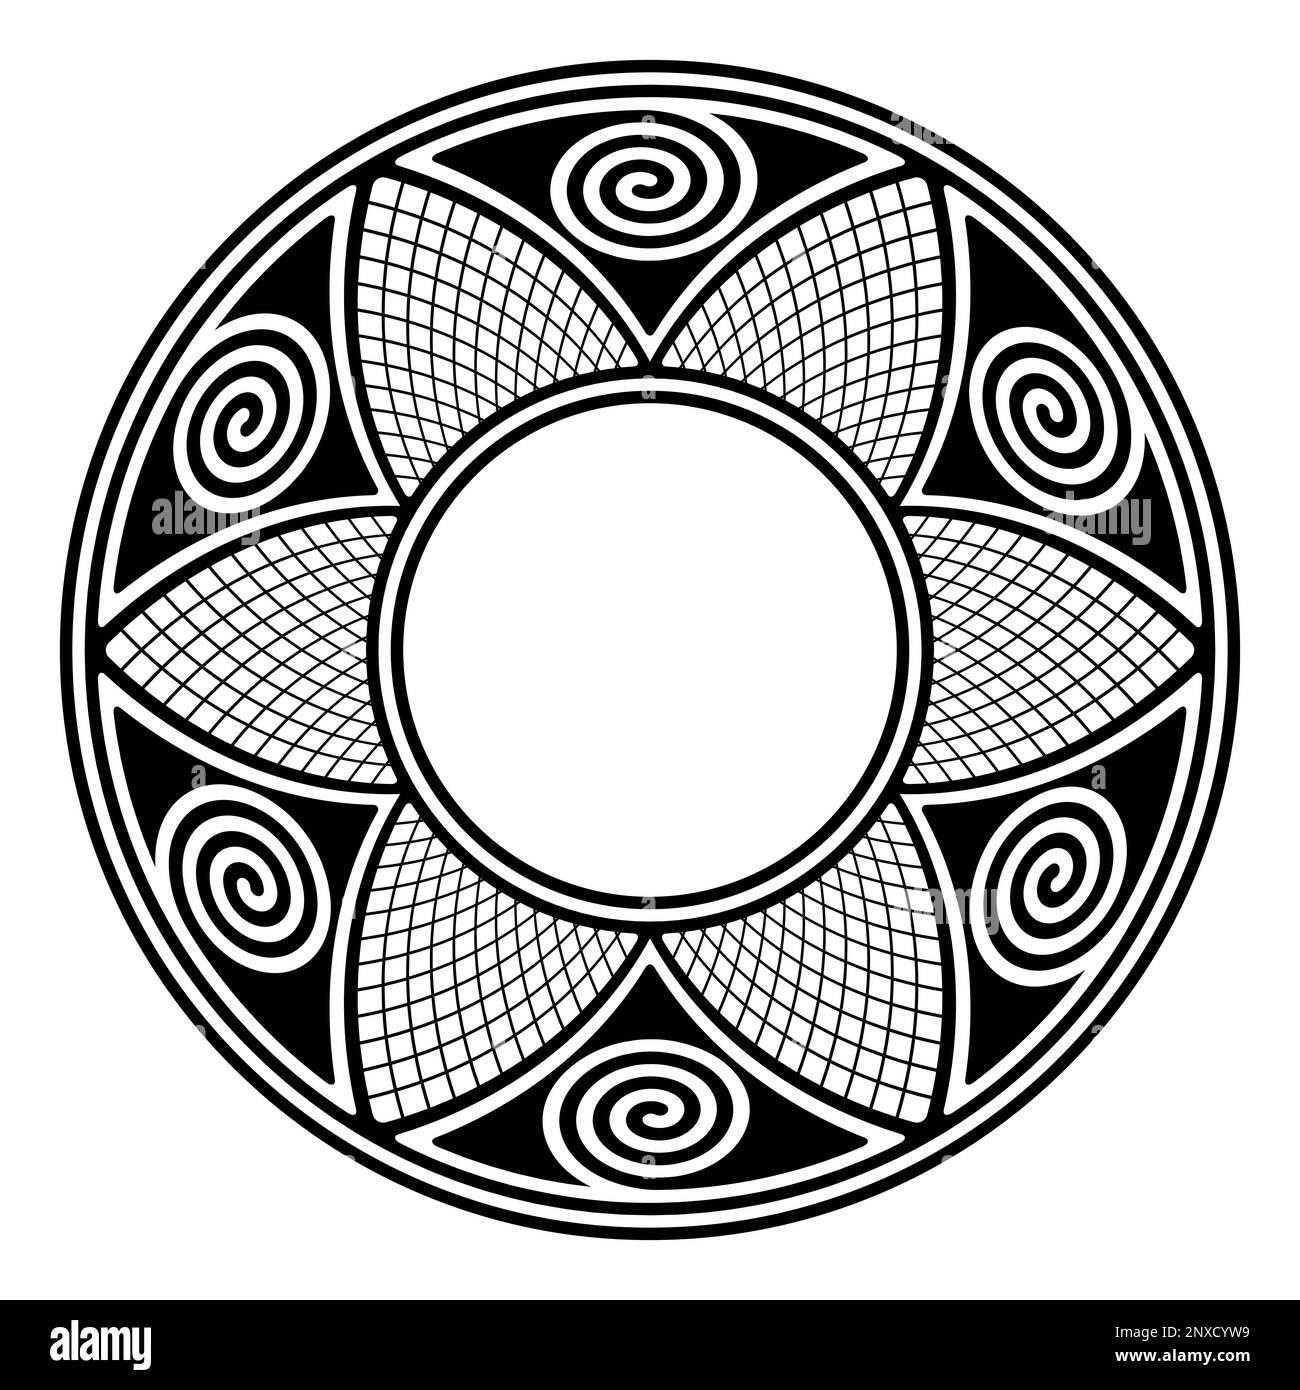 Kreisrahmen mit Hopi-Mustern. Dekorative Verzierung, inspiriert von traditionellen Töpfermotiven der Hopi, einer ethnischen Gruppe der Ureinwohner Amerikas. Stockfoto